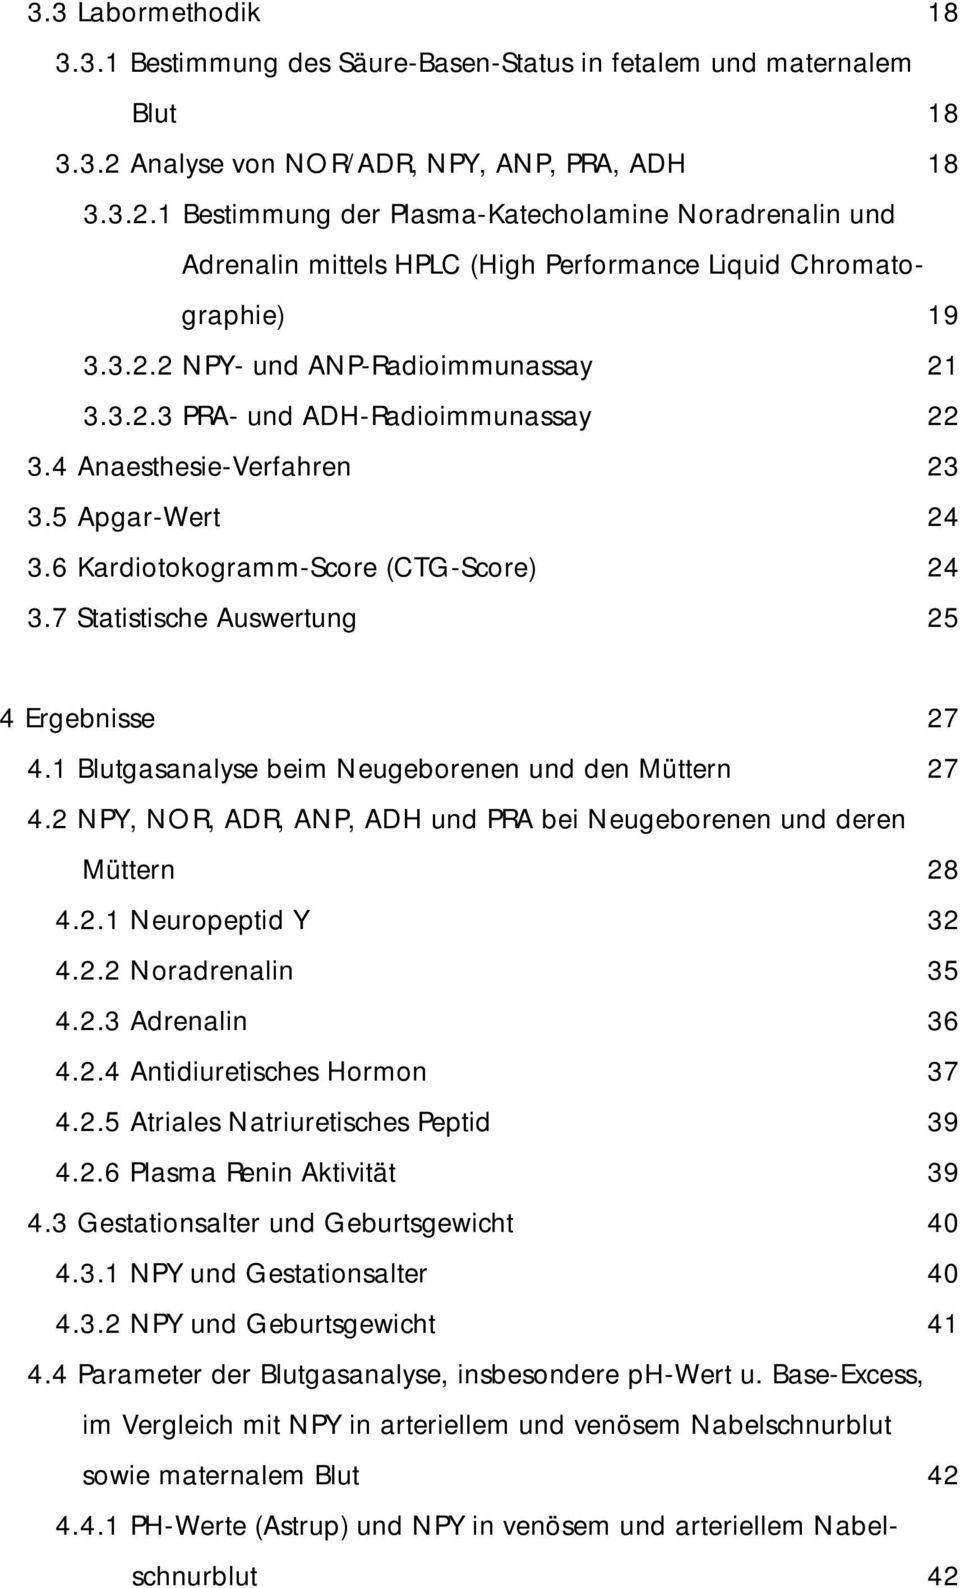 3.2.3 PRA- und ADH-Radioimmunassay 22 3.4 Anaesthesie-Verfahren 23 3.5 Apgar-Wert 24 3.6 Kardiotokogramm-Score (CTG-Score) 24 3.7 Statistische Auswertung 25 4 Ergebnisse 27 4.